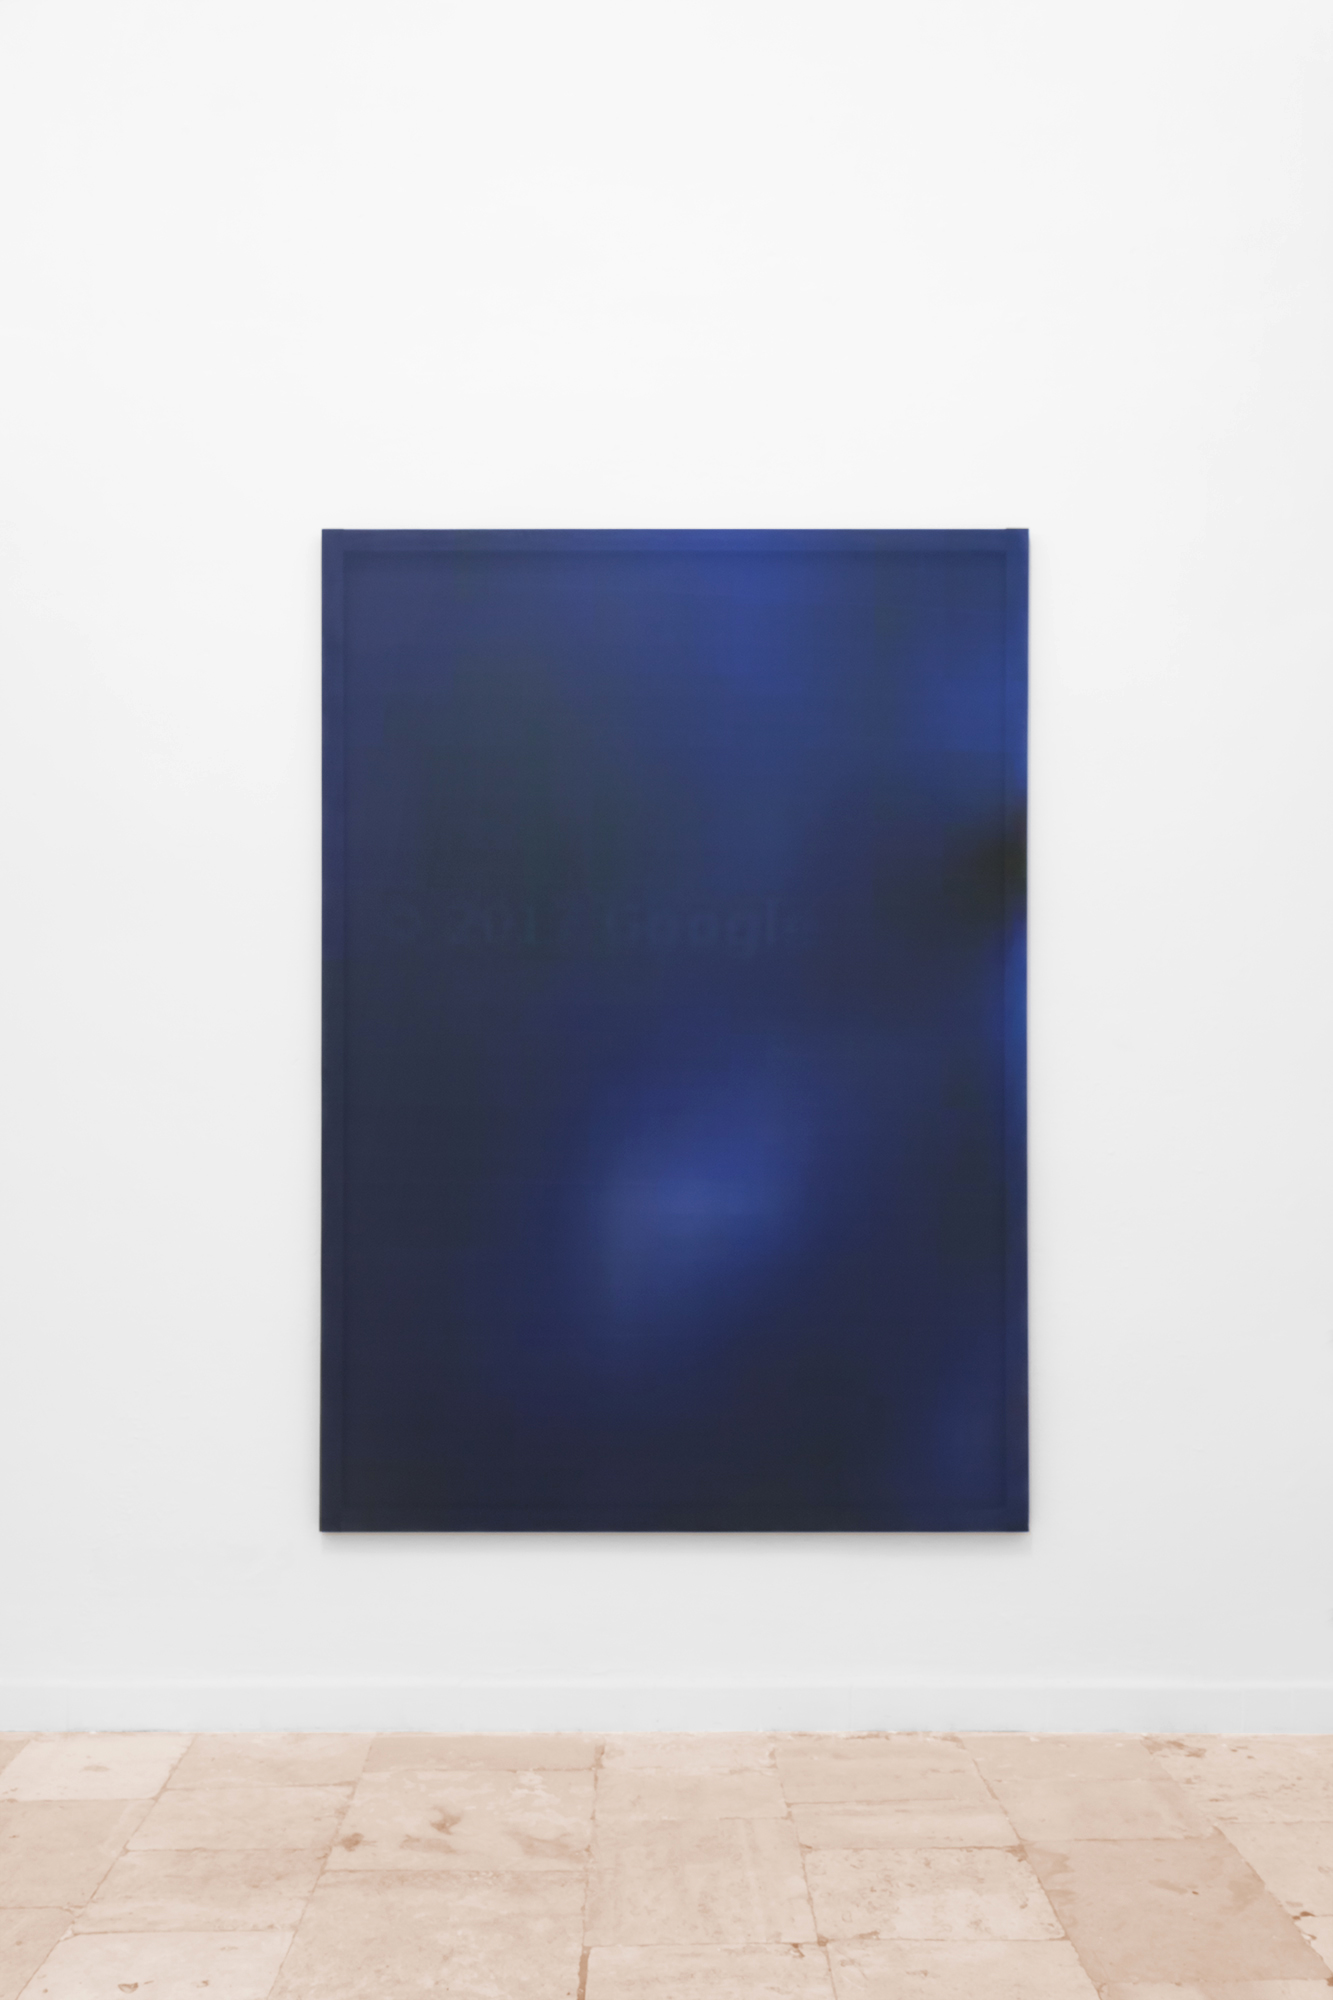 Maurizio Viceré, kh-(31) Black and blue, Stampa a inchiostro con sublimazione calandrata su tessuto nautico antivento, telaio. 170 x 150 cm. 2018